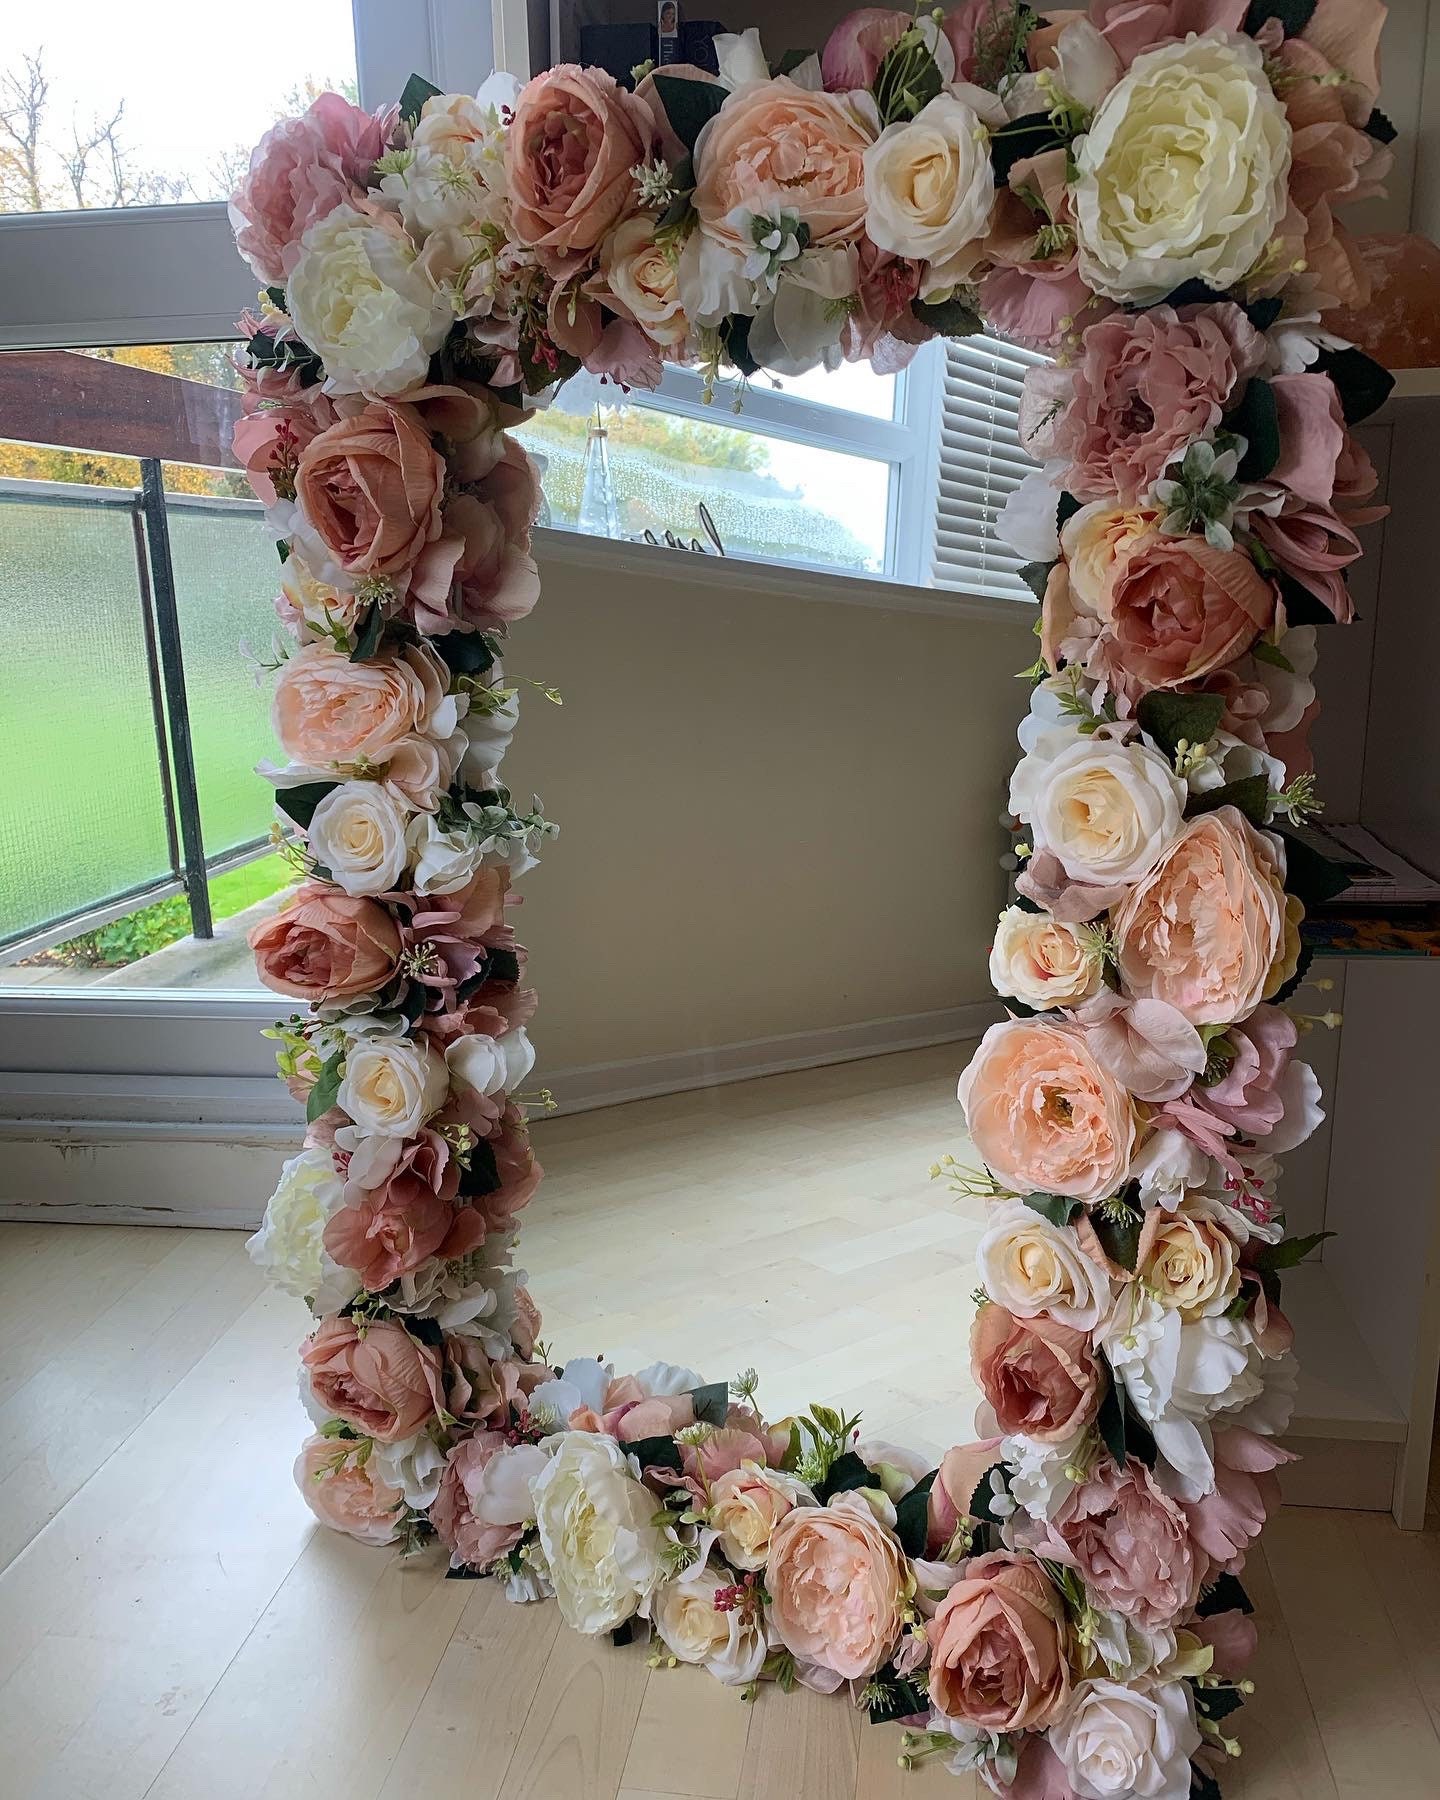 Handmade Flower Mirror - Etsy UK